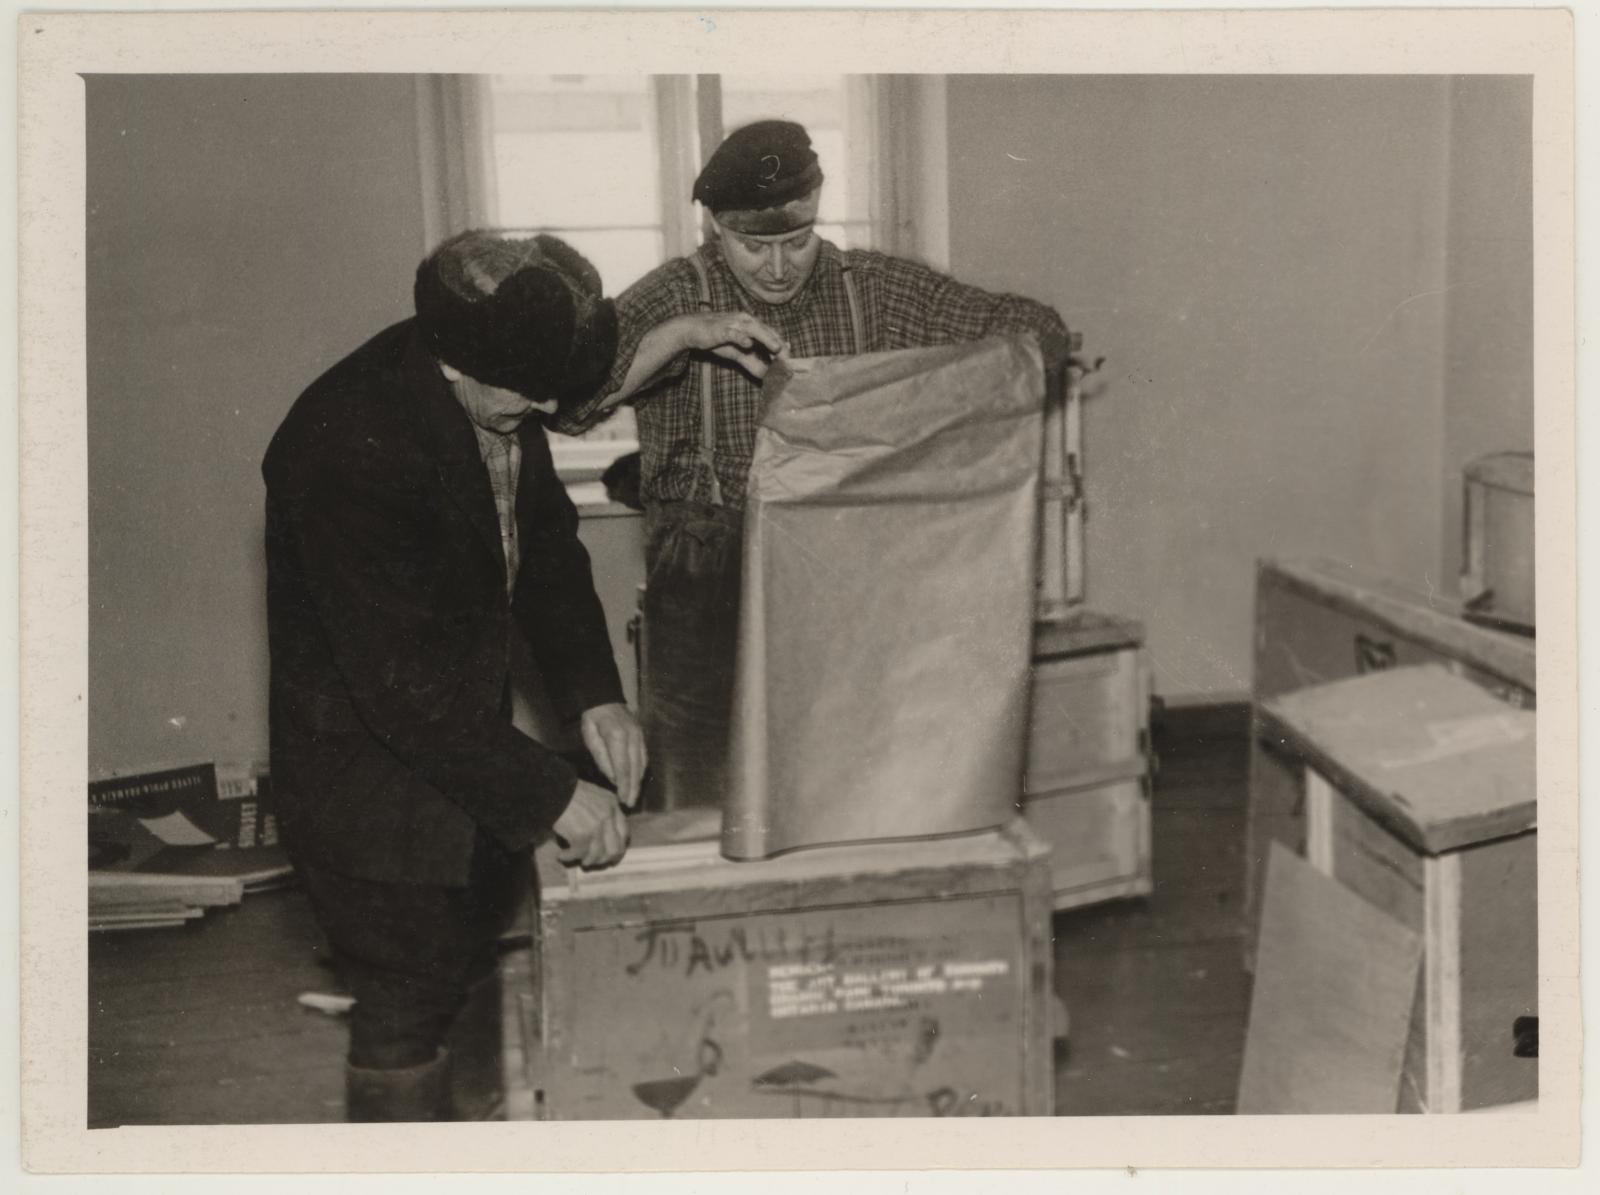 Kristjan Raua teoste pakkimine pärast näituse lõpetamist apr. 1961. Ekspressid: Kroonberg ja Lüdimois.